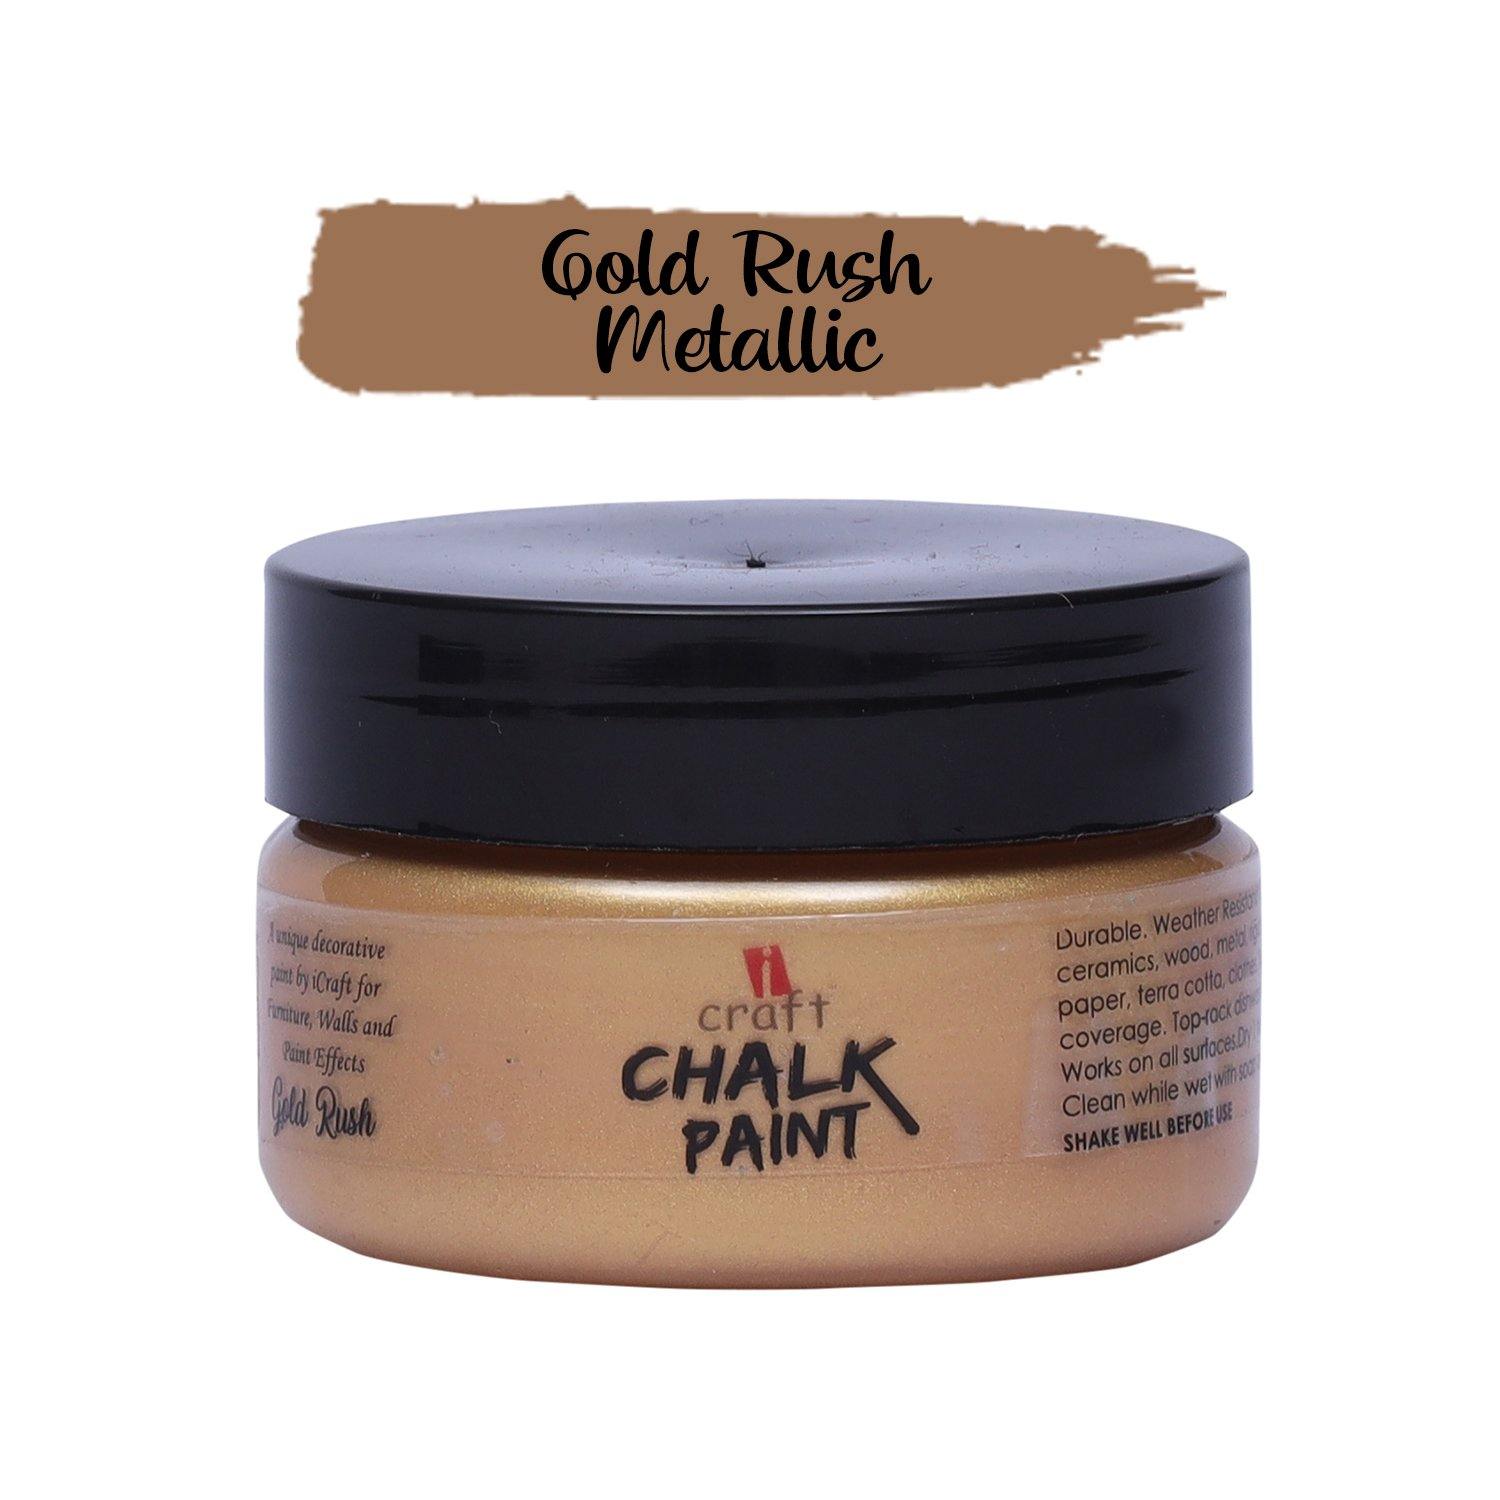 Metallic Chalk Paint - Gold Rush - Growing Craft - Best craft Supplies